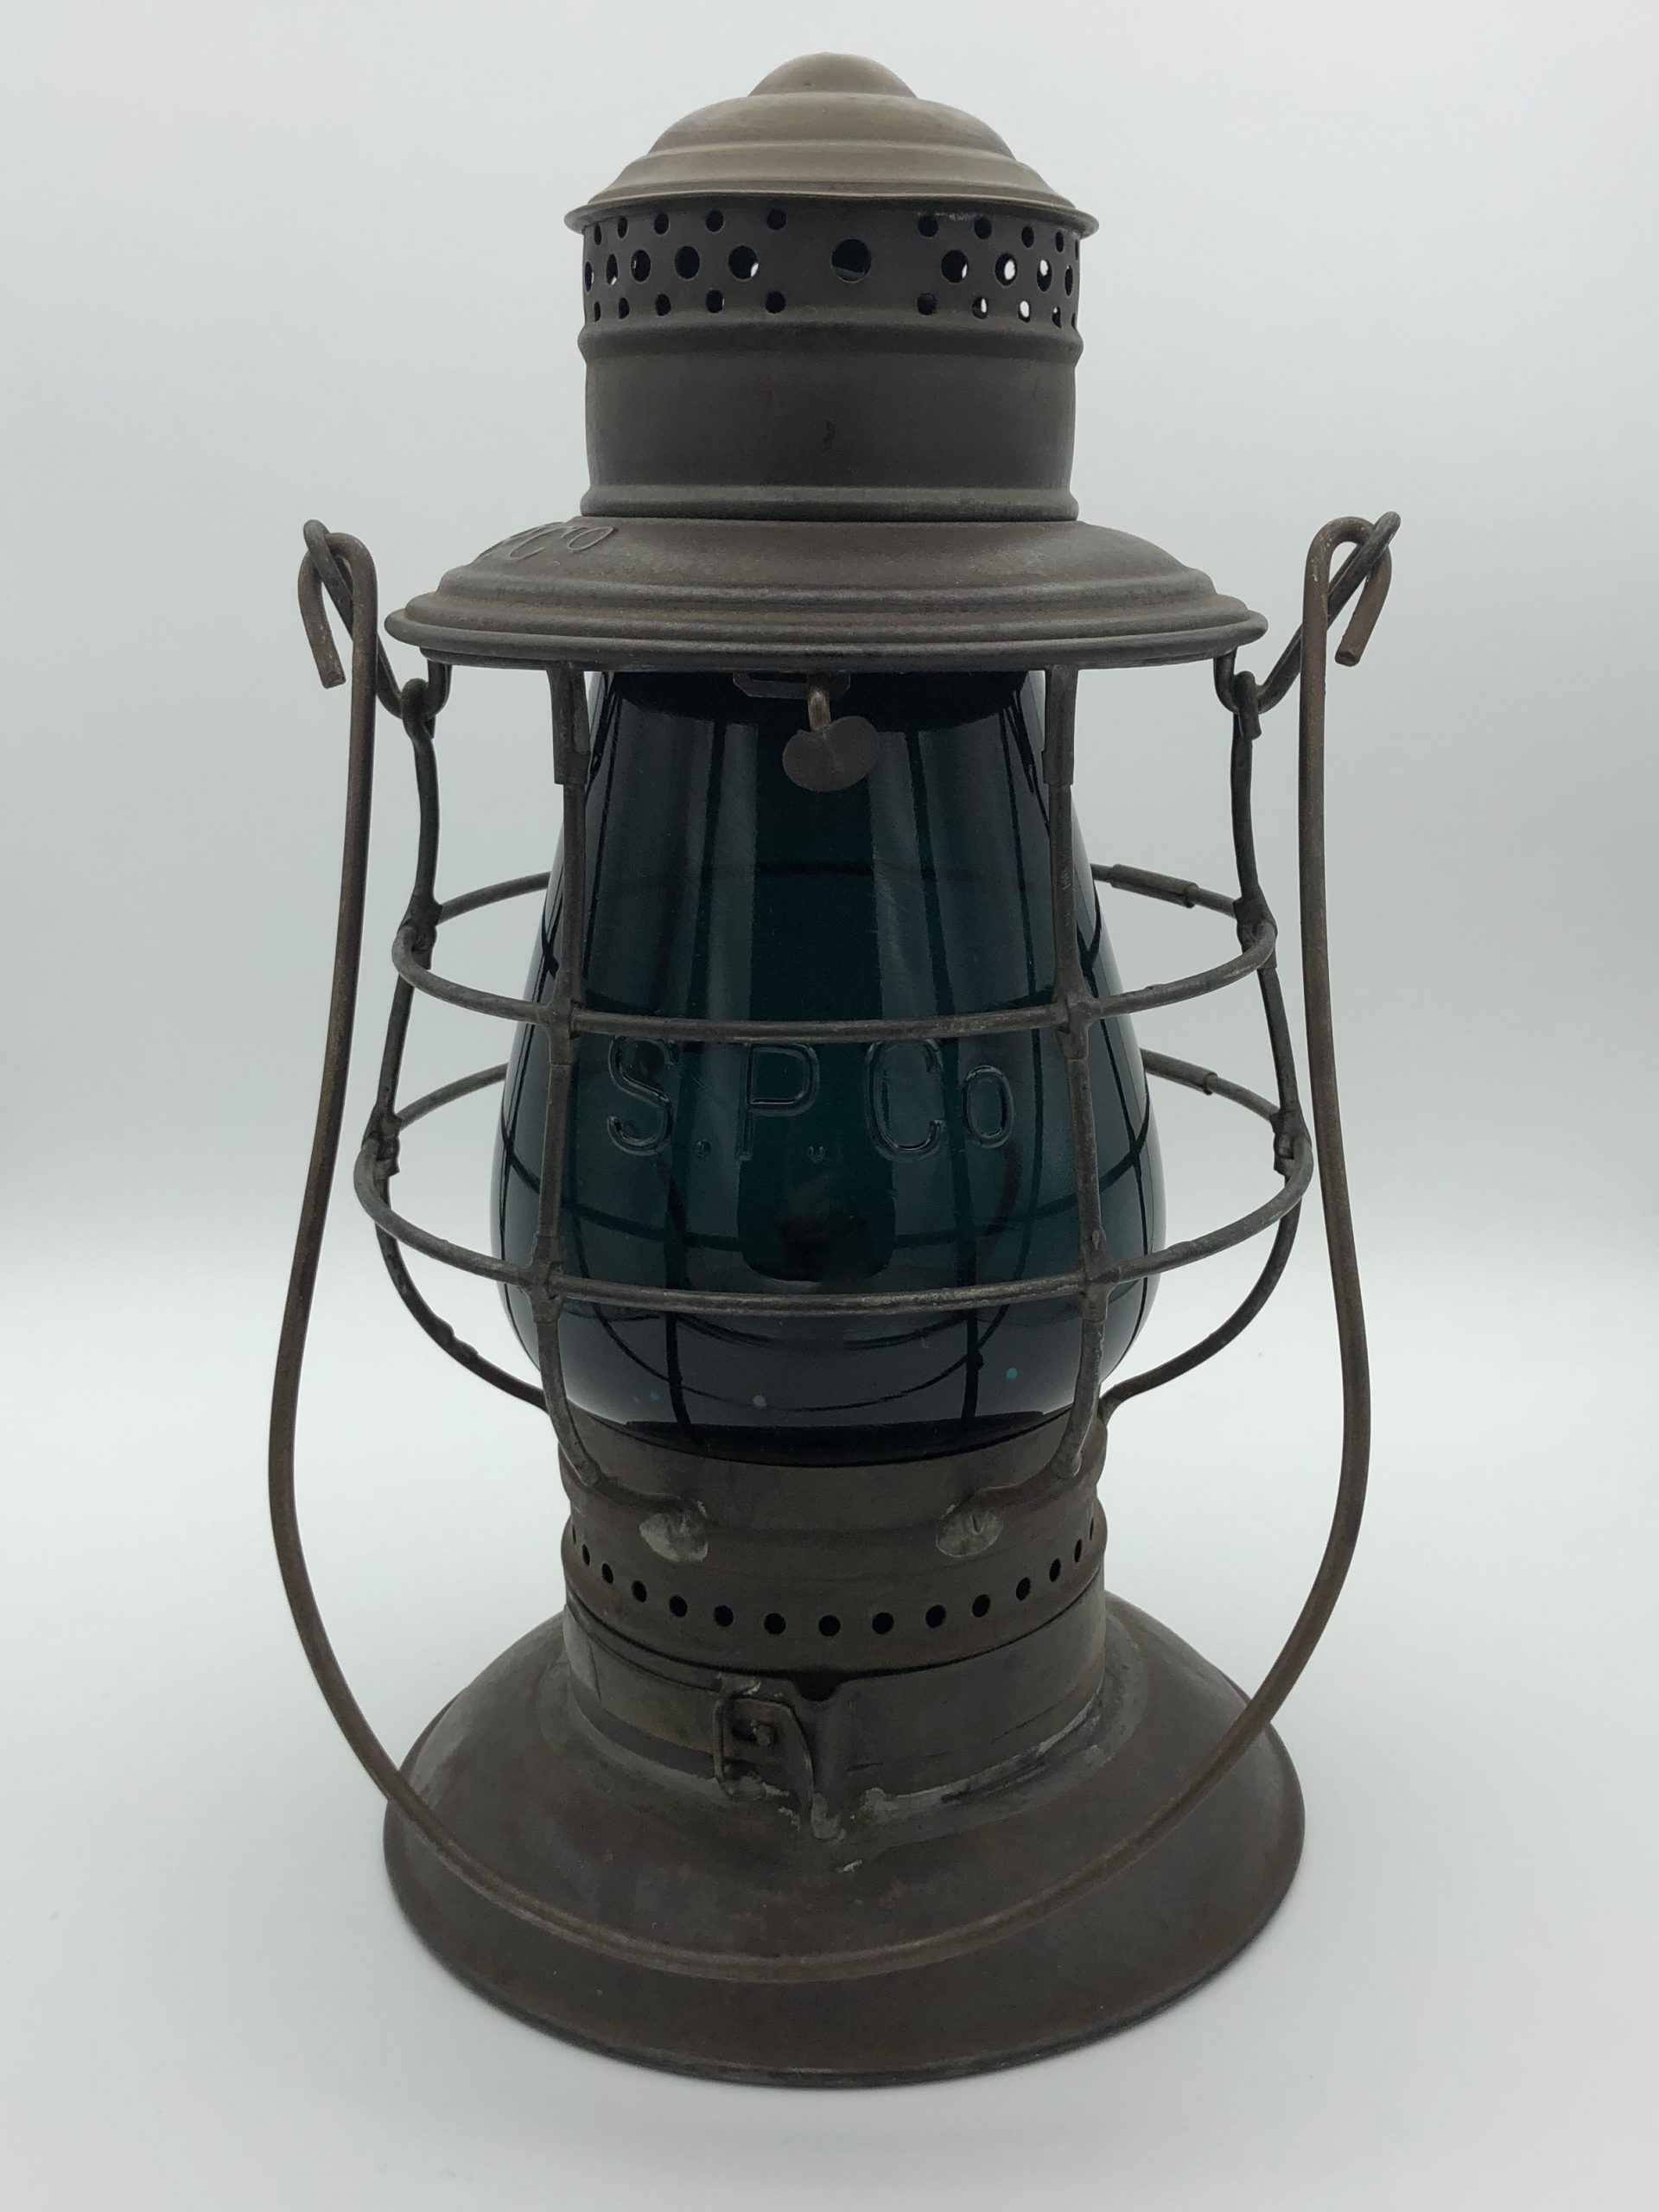 CCC & StL Adams & Westlake #39 Double Guard Wire Railroad Lantern PAT'D  1895